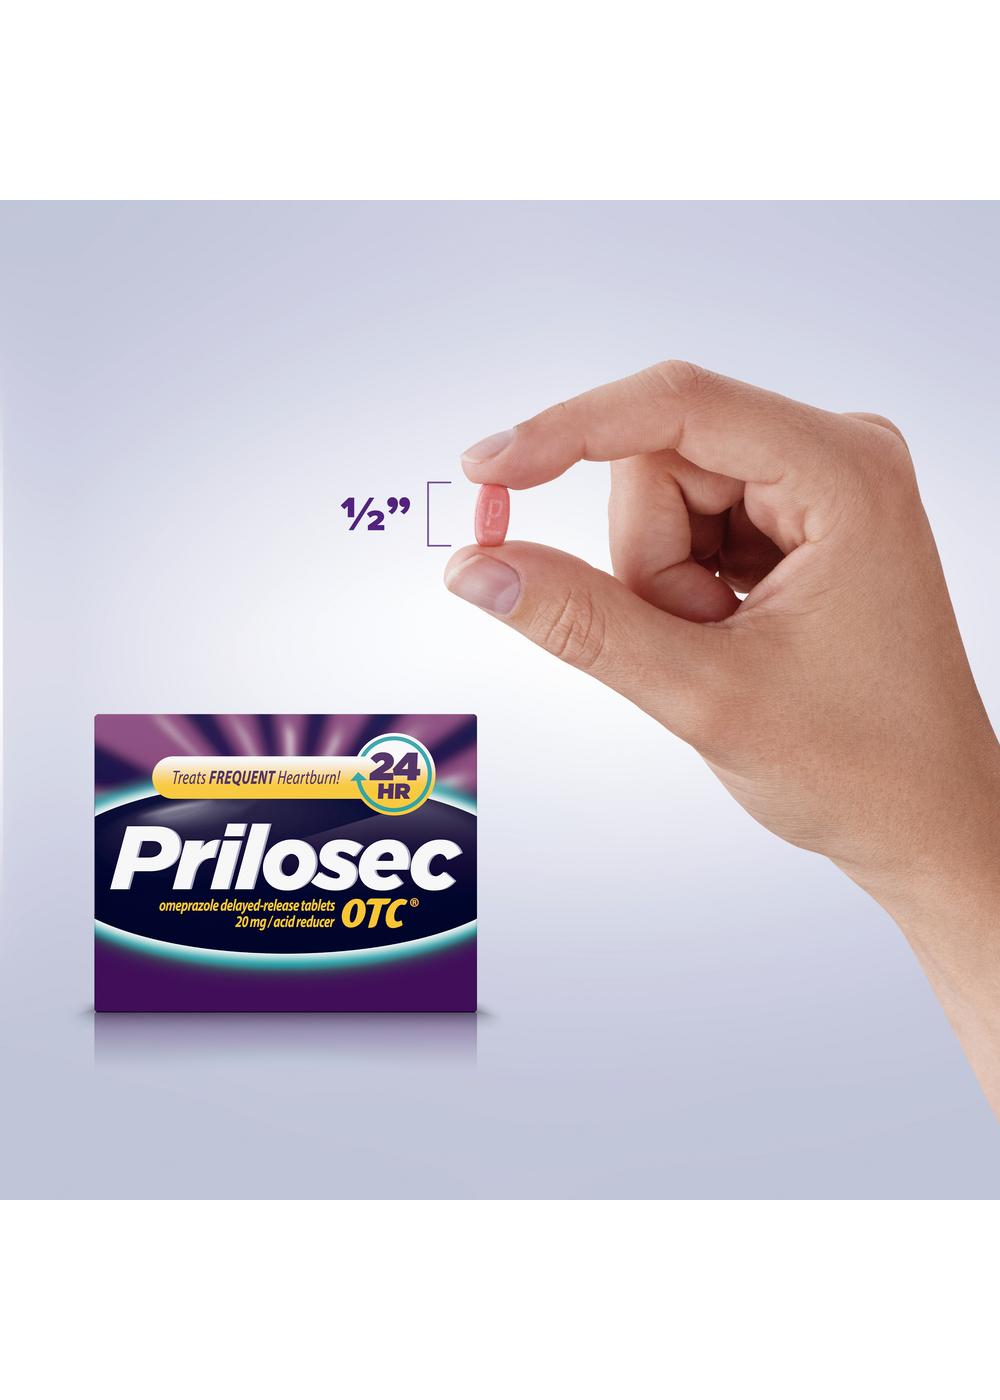 Prilosec Omeprazole Delayed Release Acid Reducer Tablets; image 4 of 8